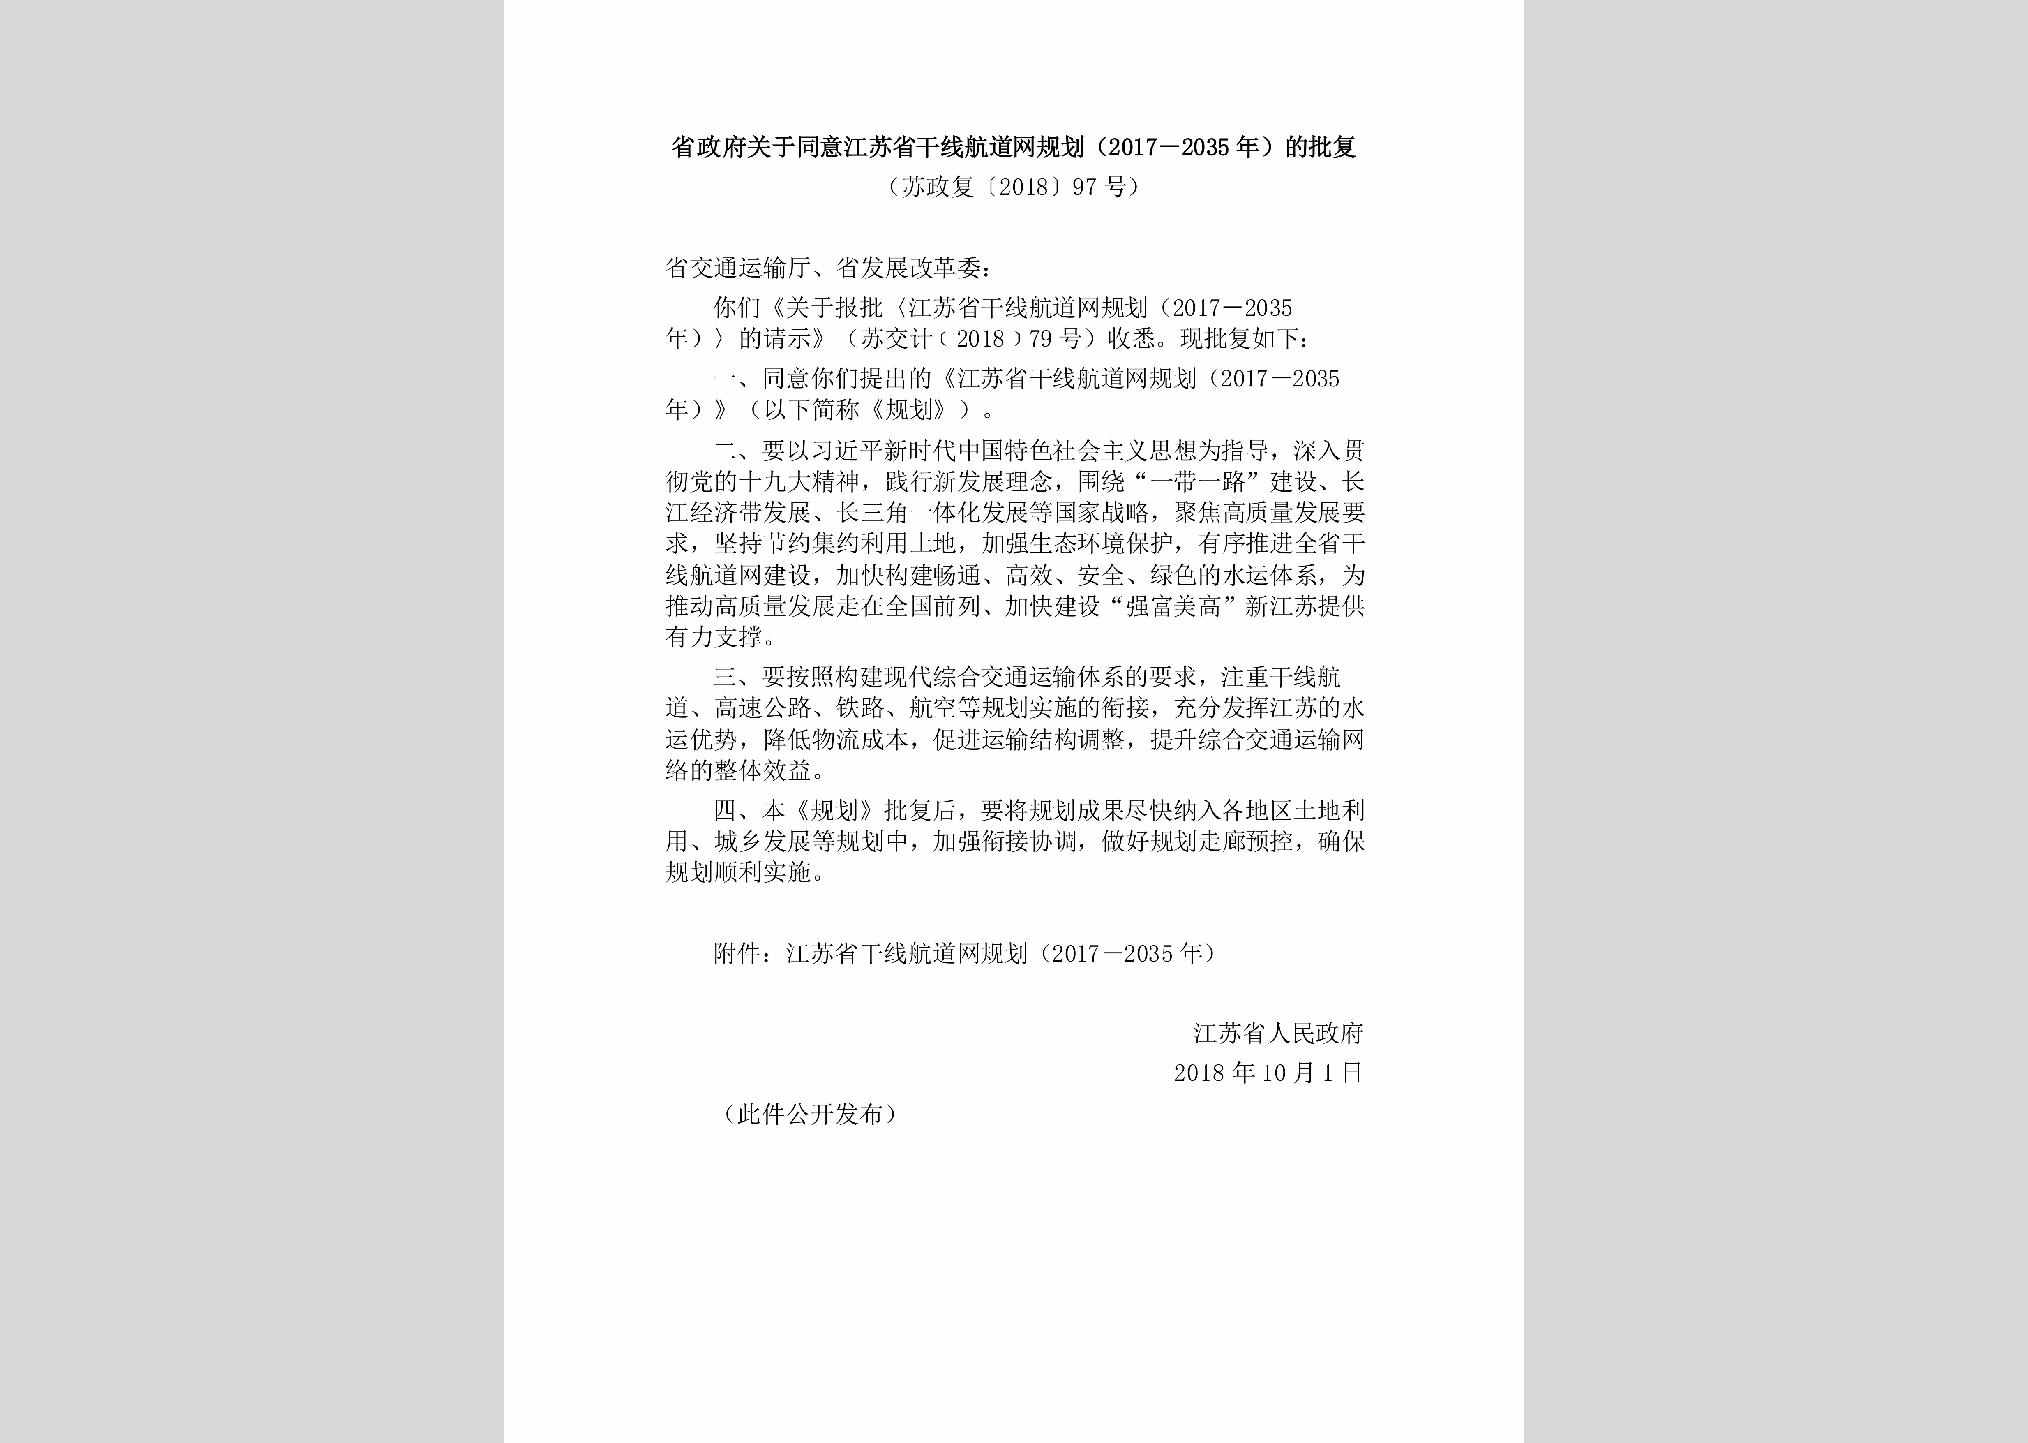 苏政发[2018]97号：江苏省人民政府关于明确涉税政府规章规范性文件实施主体的通知